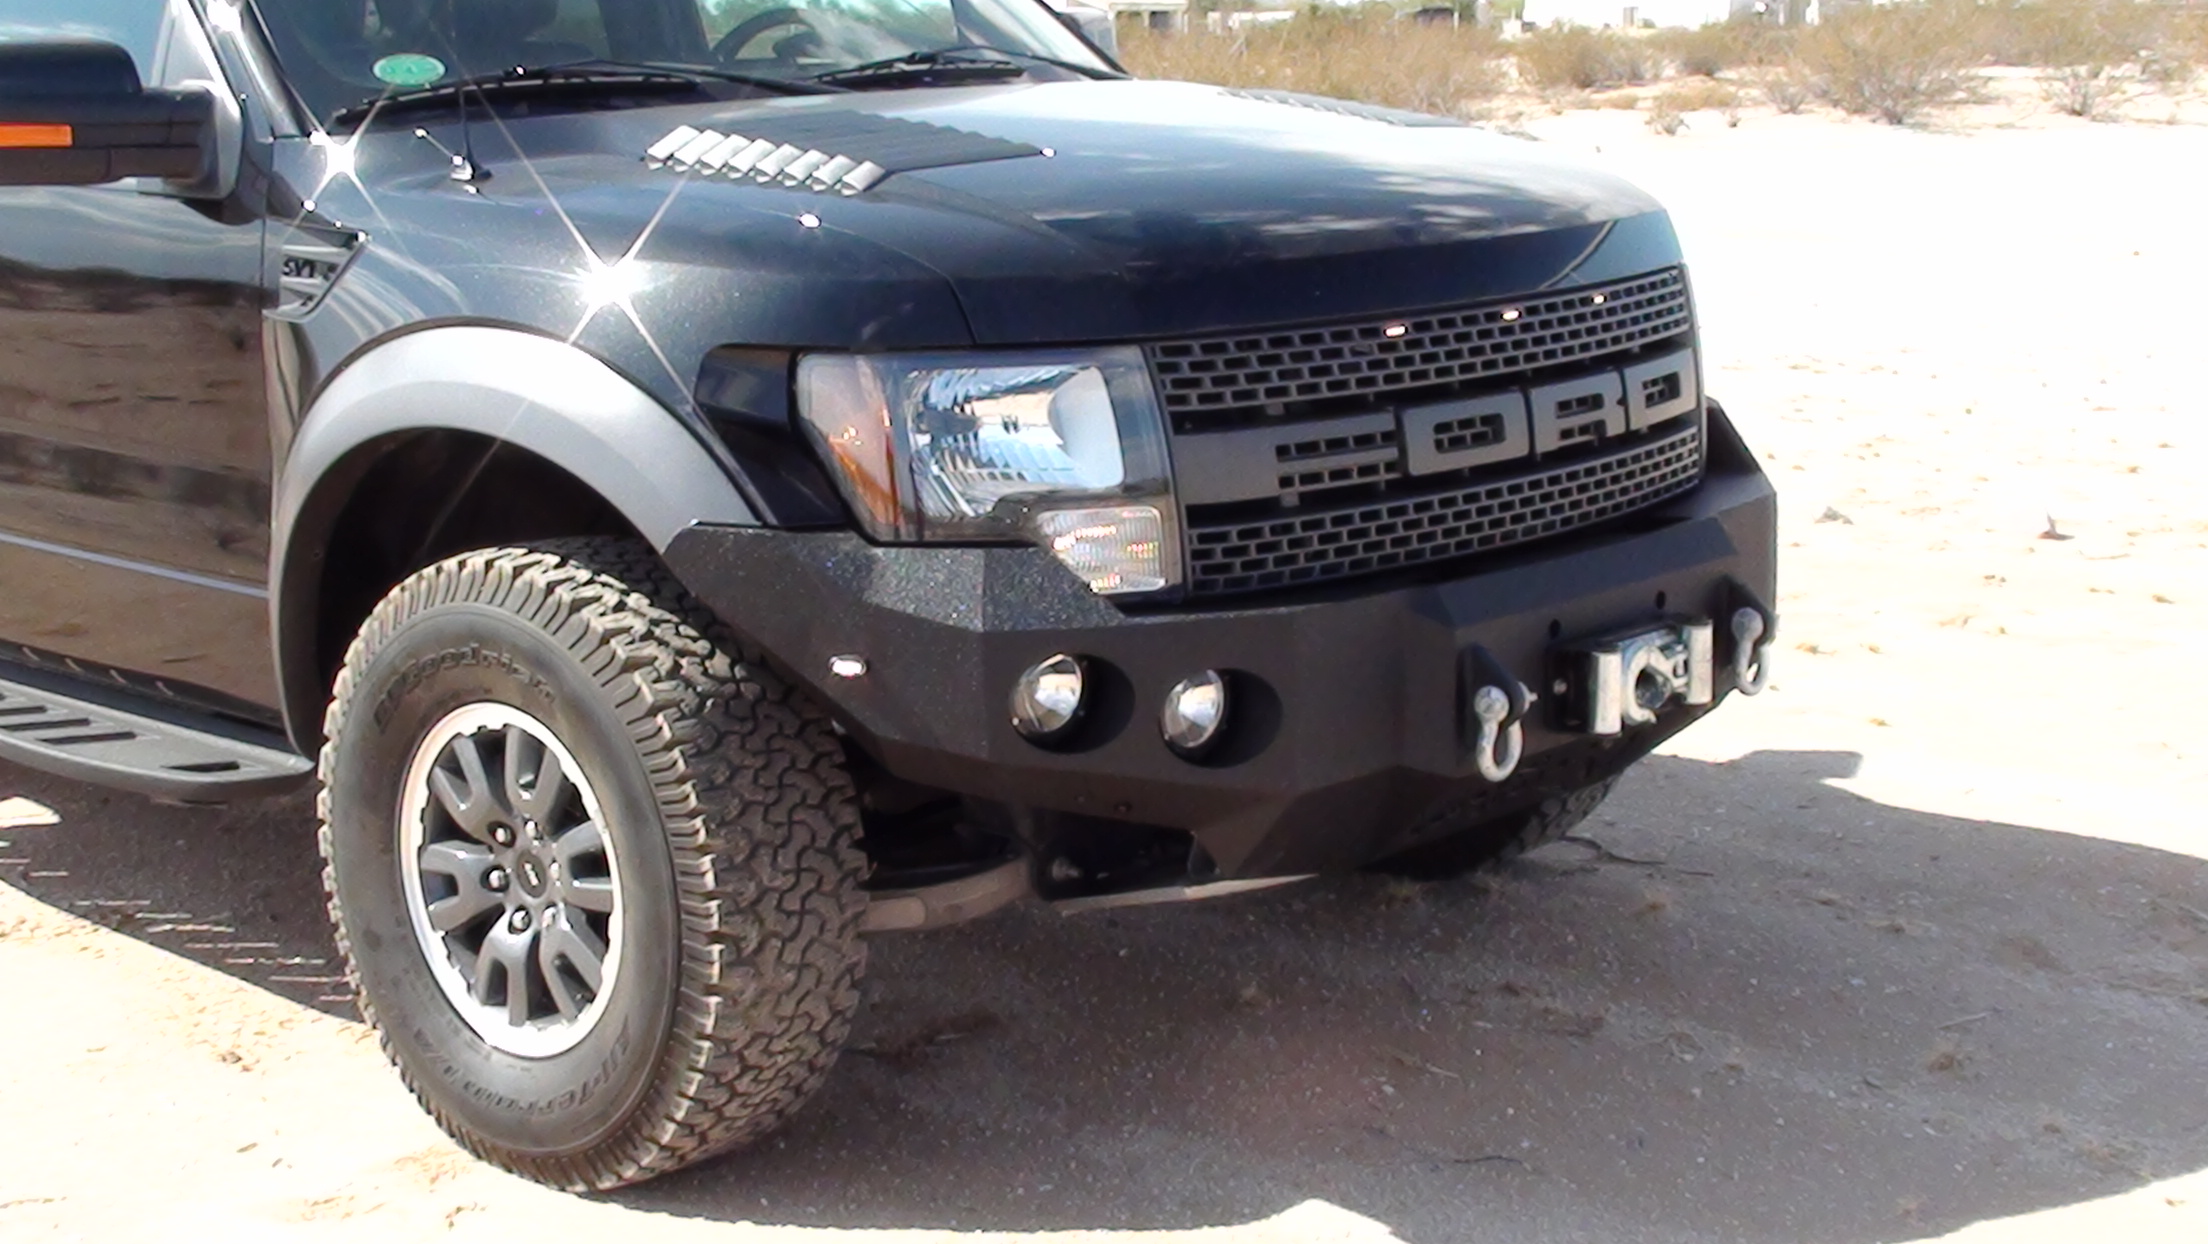 10-14 Ford Raptor front base bumper